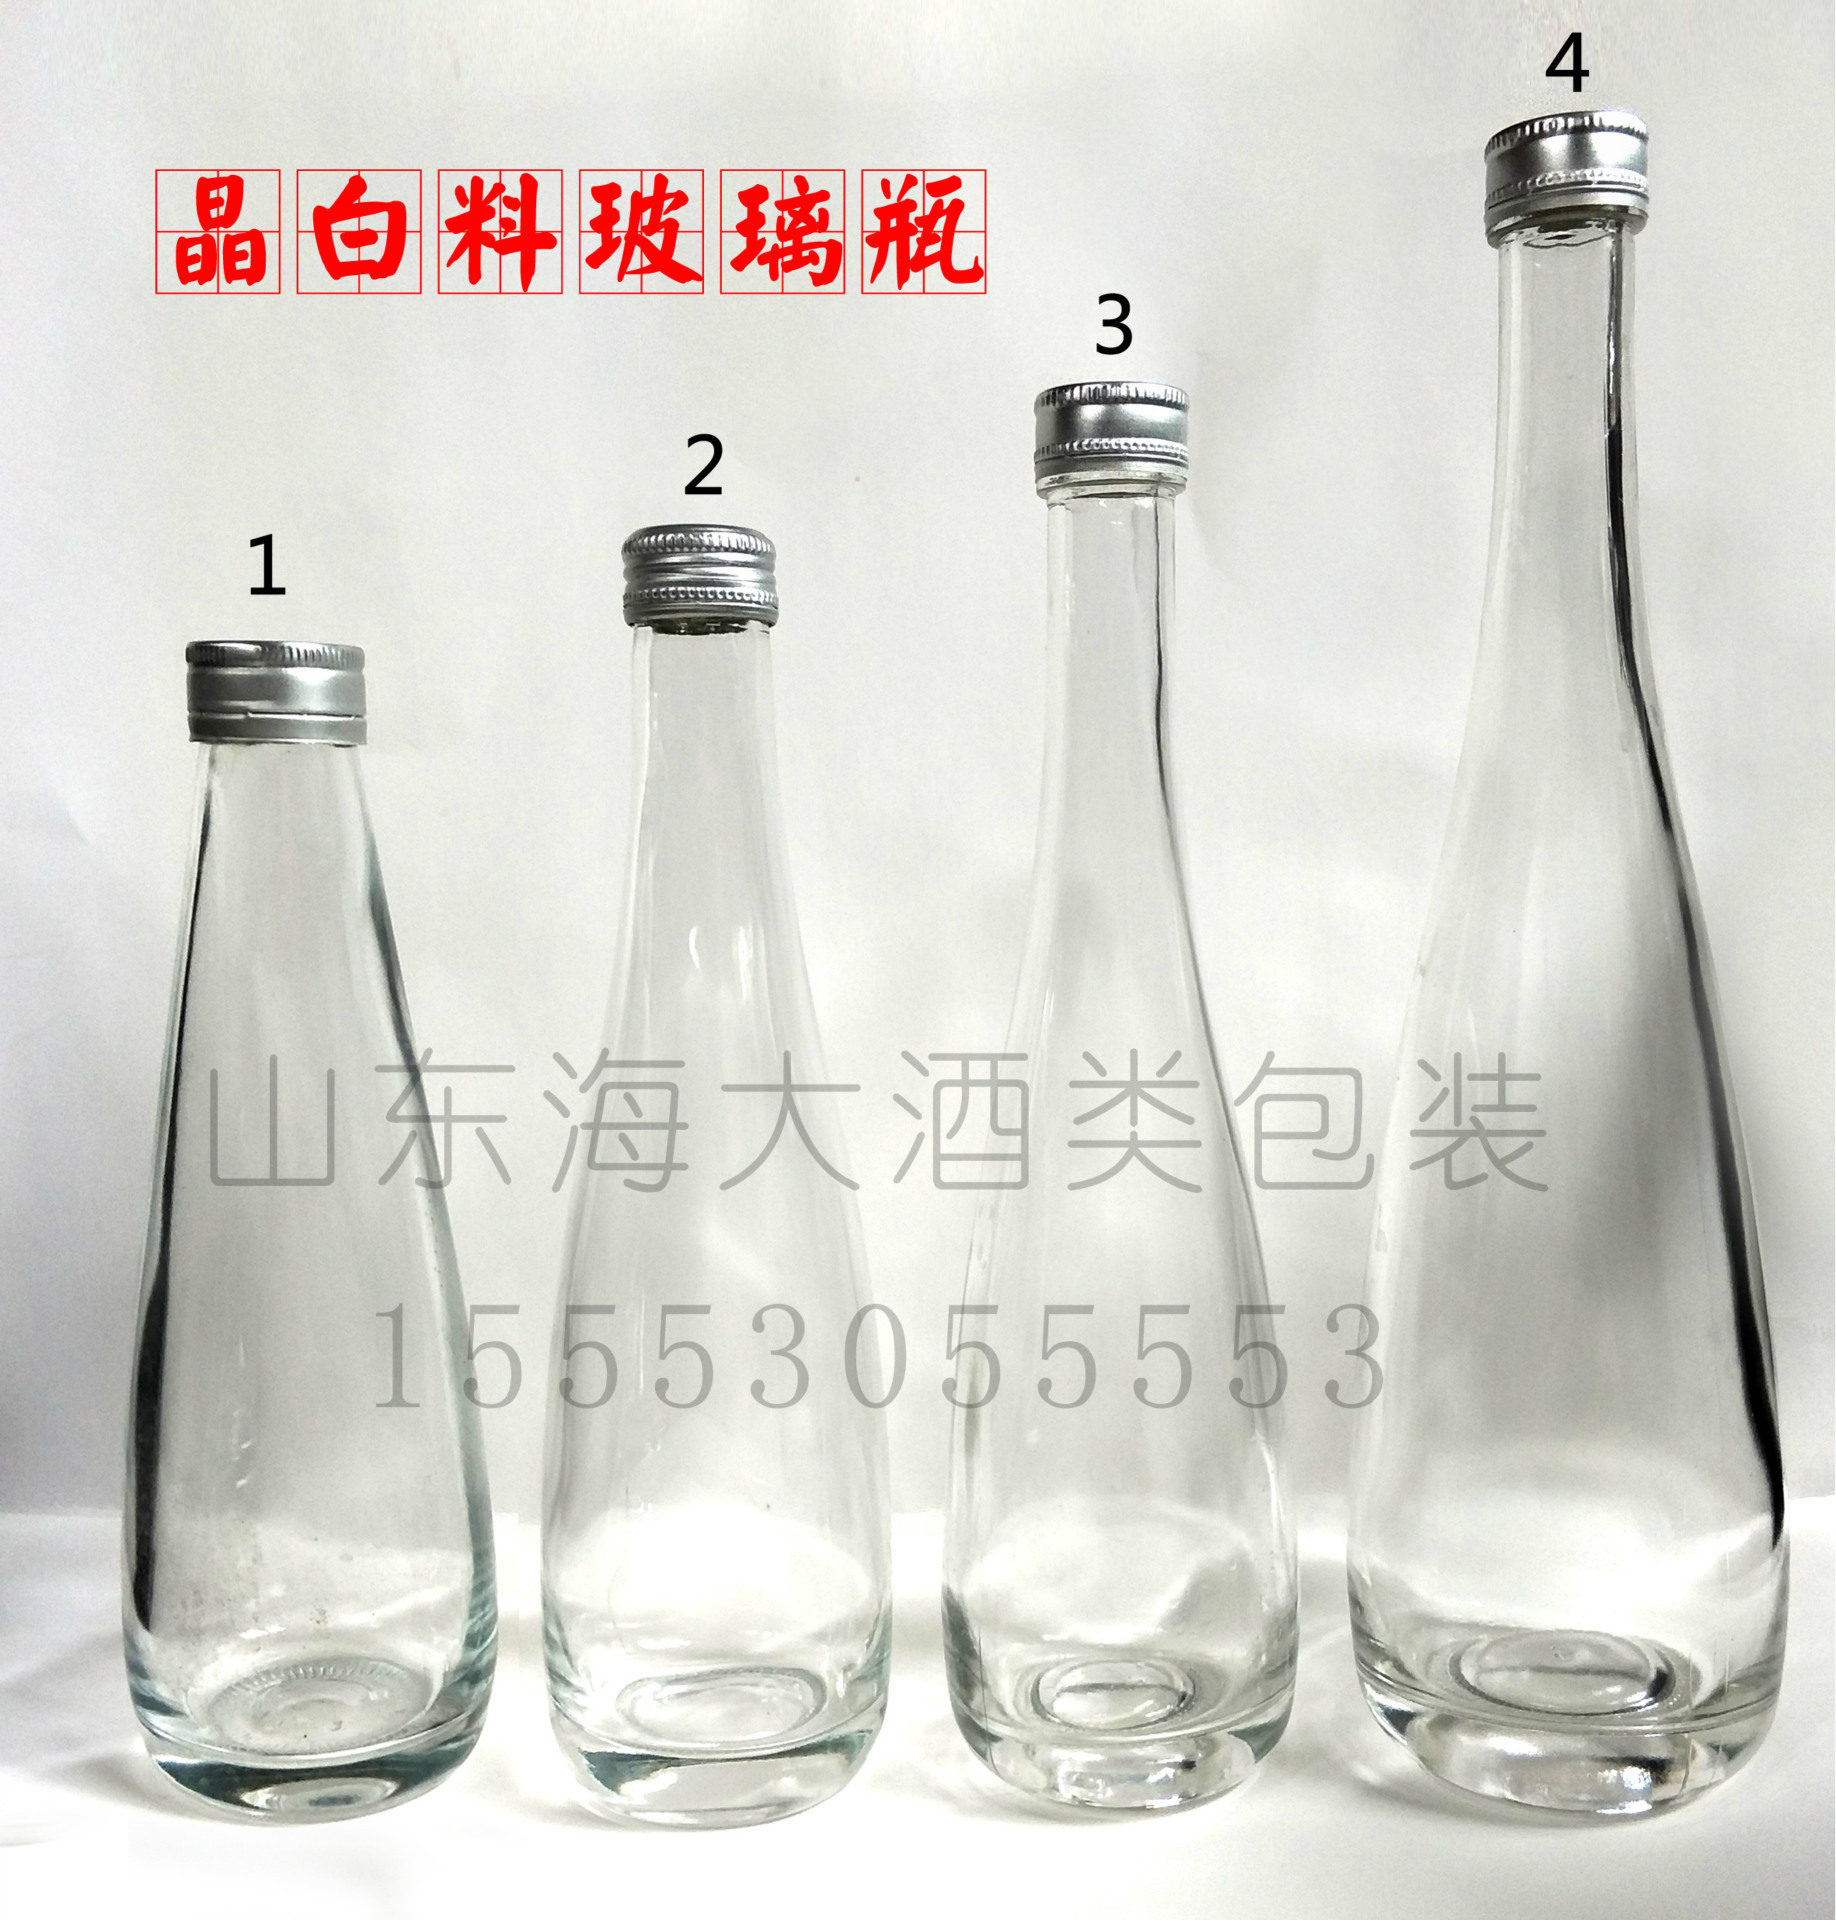 高档 330ml果酒瓶 晶白料 冰酒玻璃瓶375ml 酵素酒瓶 果酒玻璃瓶示例图1